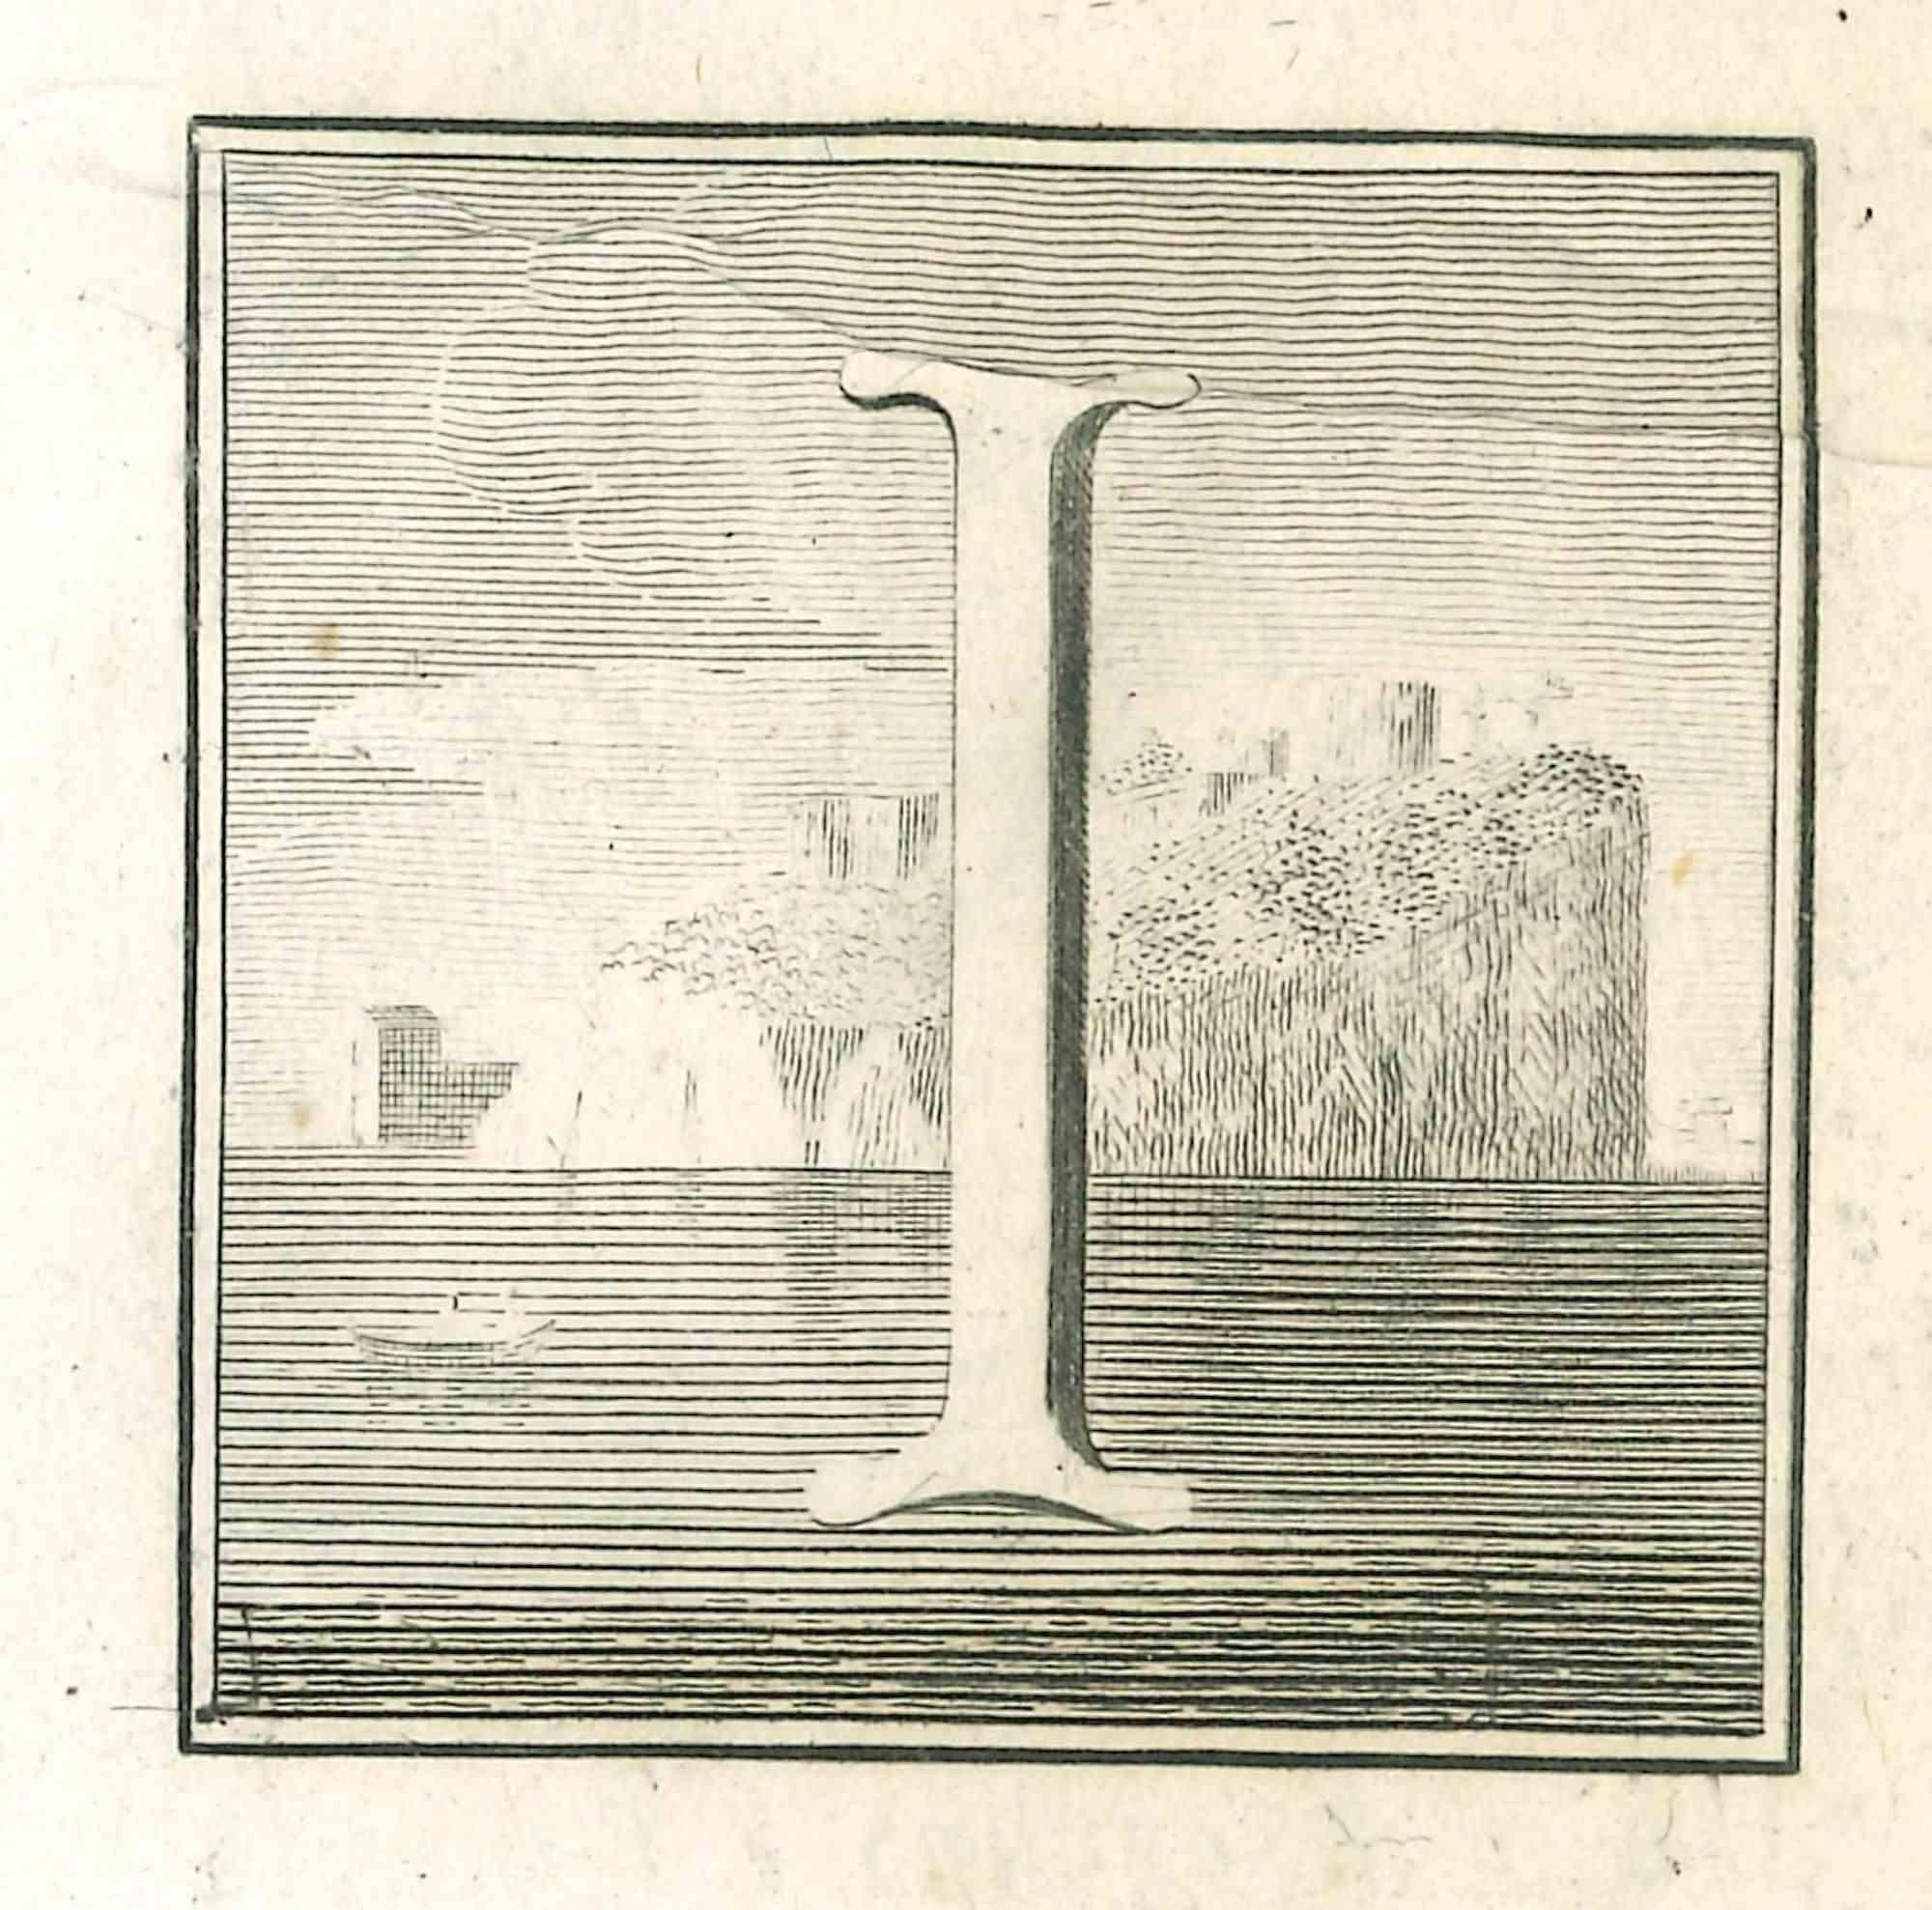 Lettre de l'alphabet I,  de la série "Antiquités d'Herculanum", est une gravure sur papier réalisée par Luigi Vanvitelli au 18ème siècle.

Bon état avec quelques pliures.

La gravure appartient à la suite d'estampes "Antiquités d'Herculanum